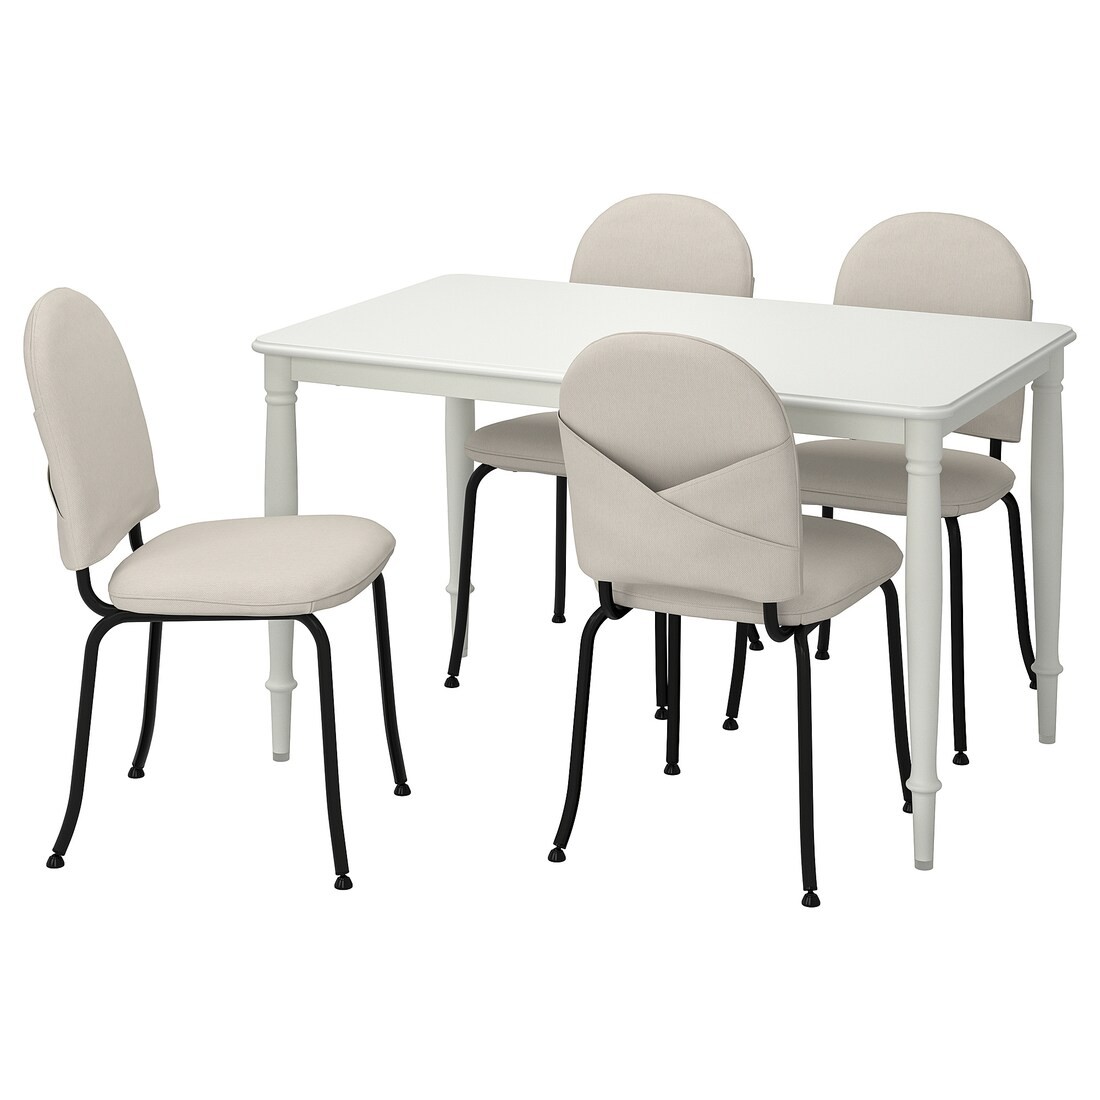 DANDERYD / EBBALYCKE Стол и 4 стула, белый / Idekulla бежевый, 130 см